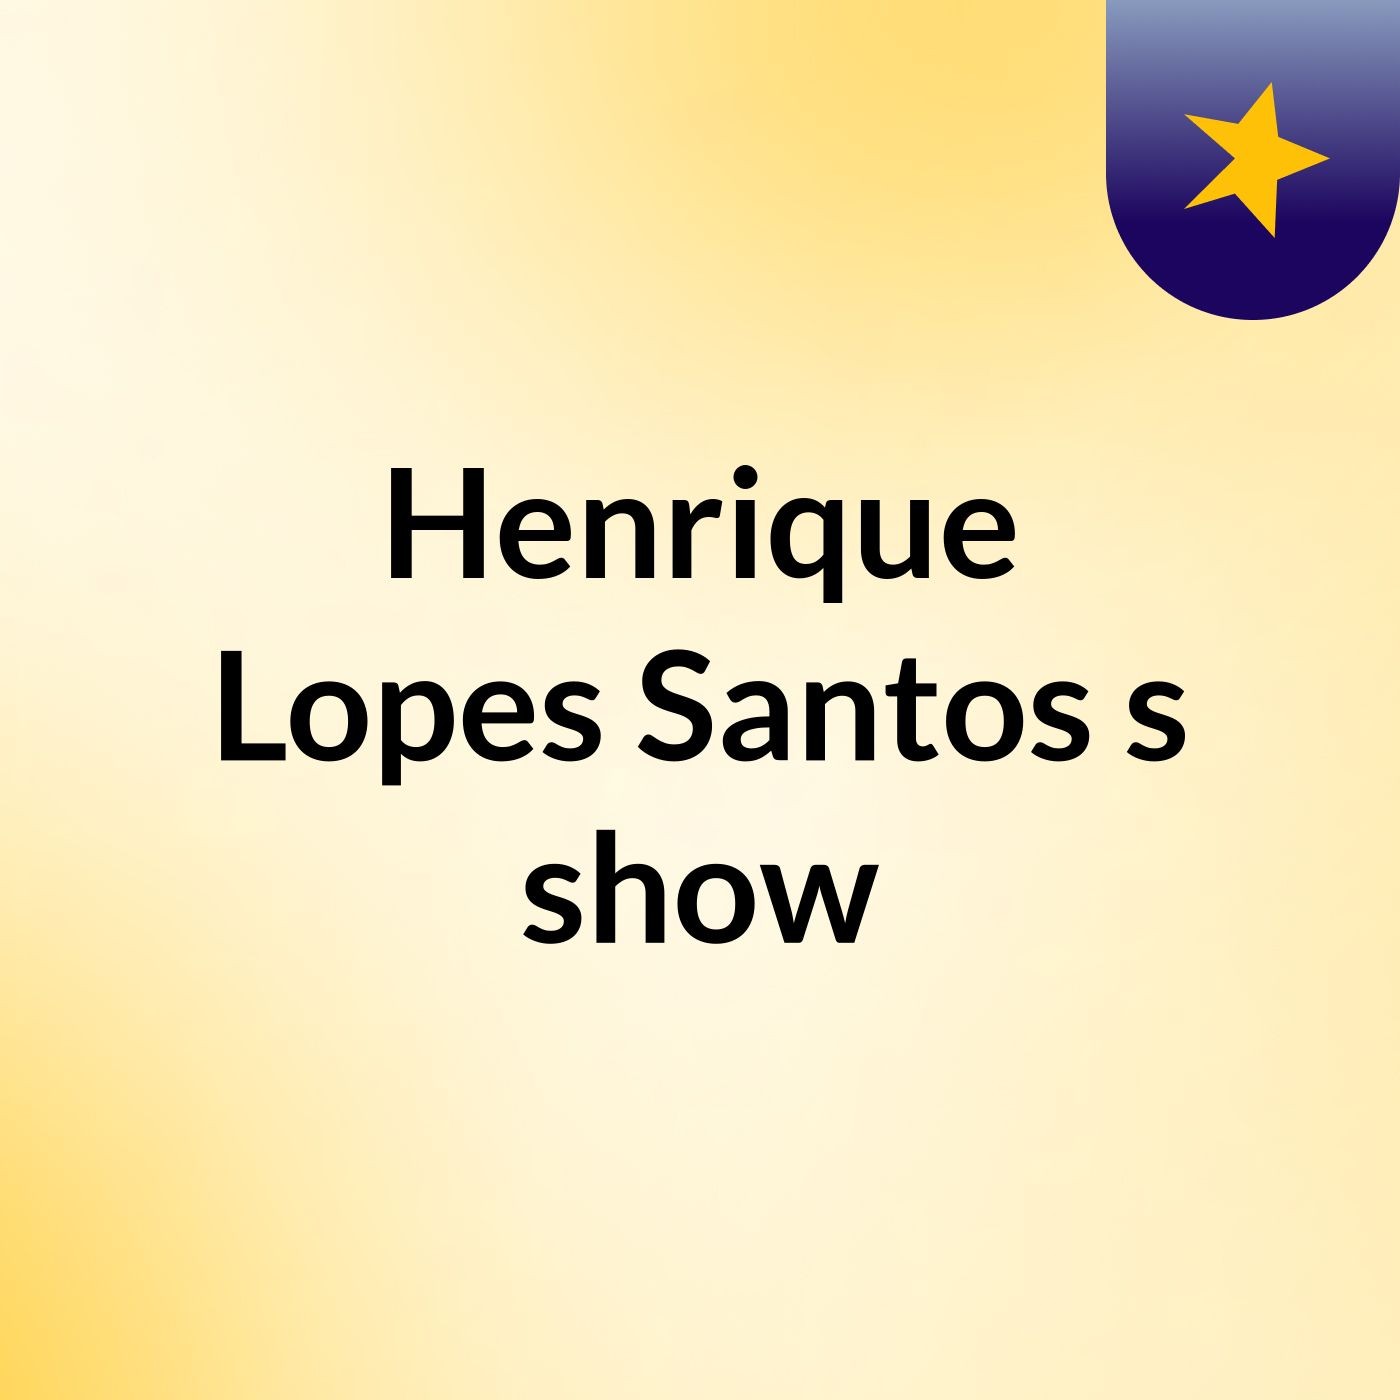 Henrique Lopes Santos's show